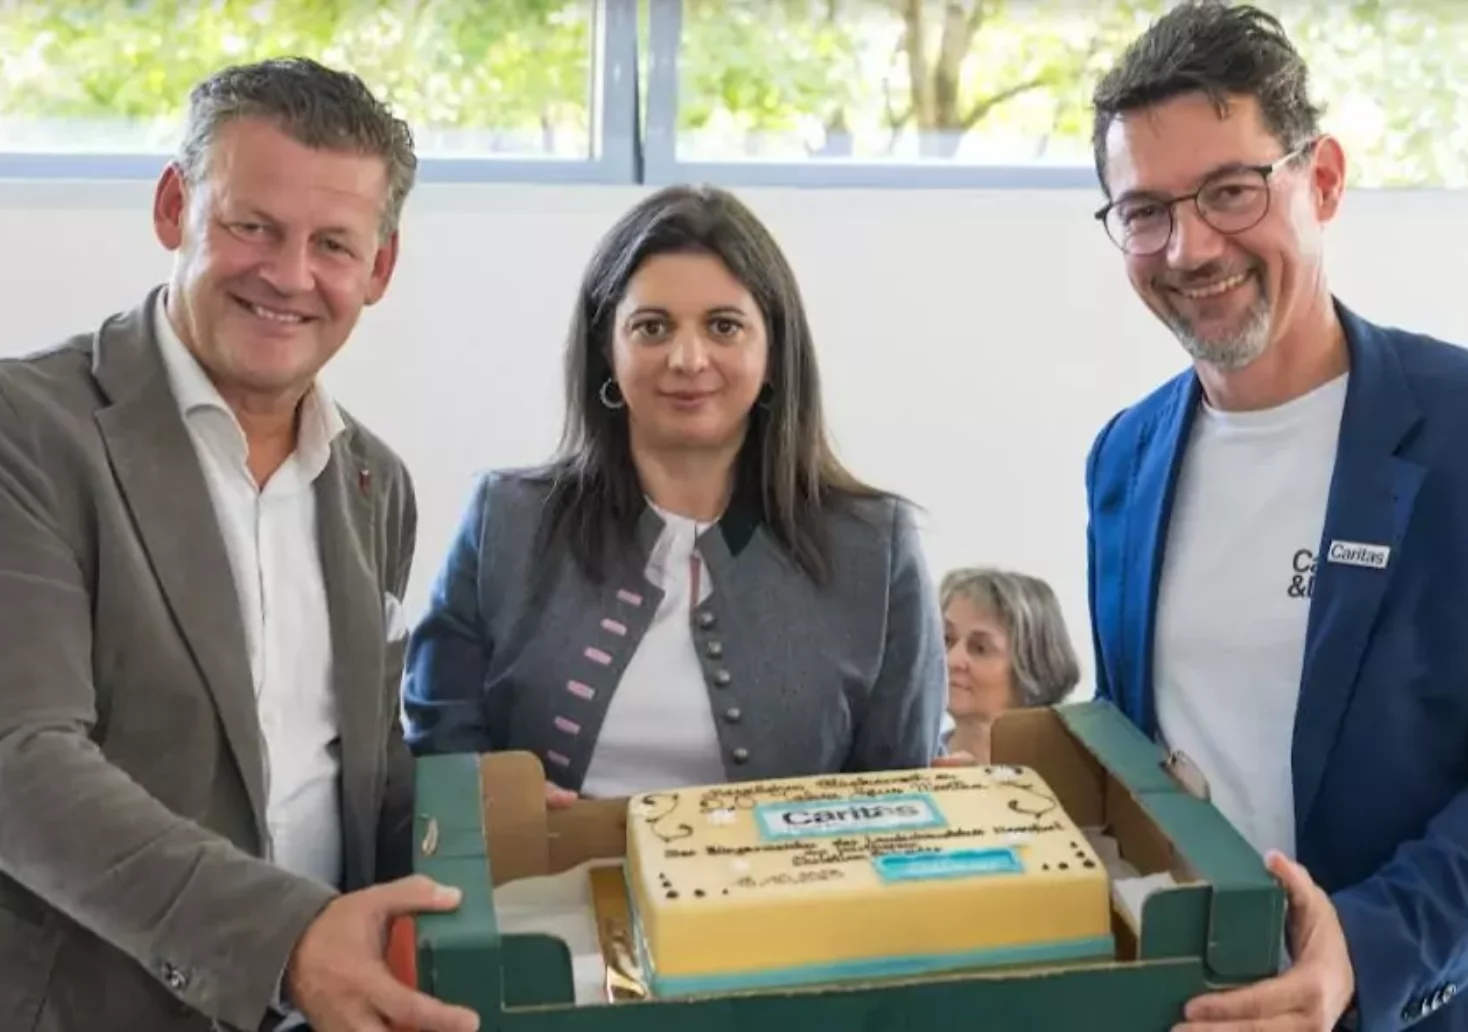 Foto in Beitrag von 5min.at: Bürgermeister Christian Scheider hat dem Wohnhaus "Martha" einen Besuch abgestattet und mit einem Kuchen alles Gute gewünscht.